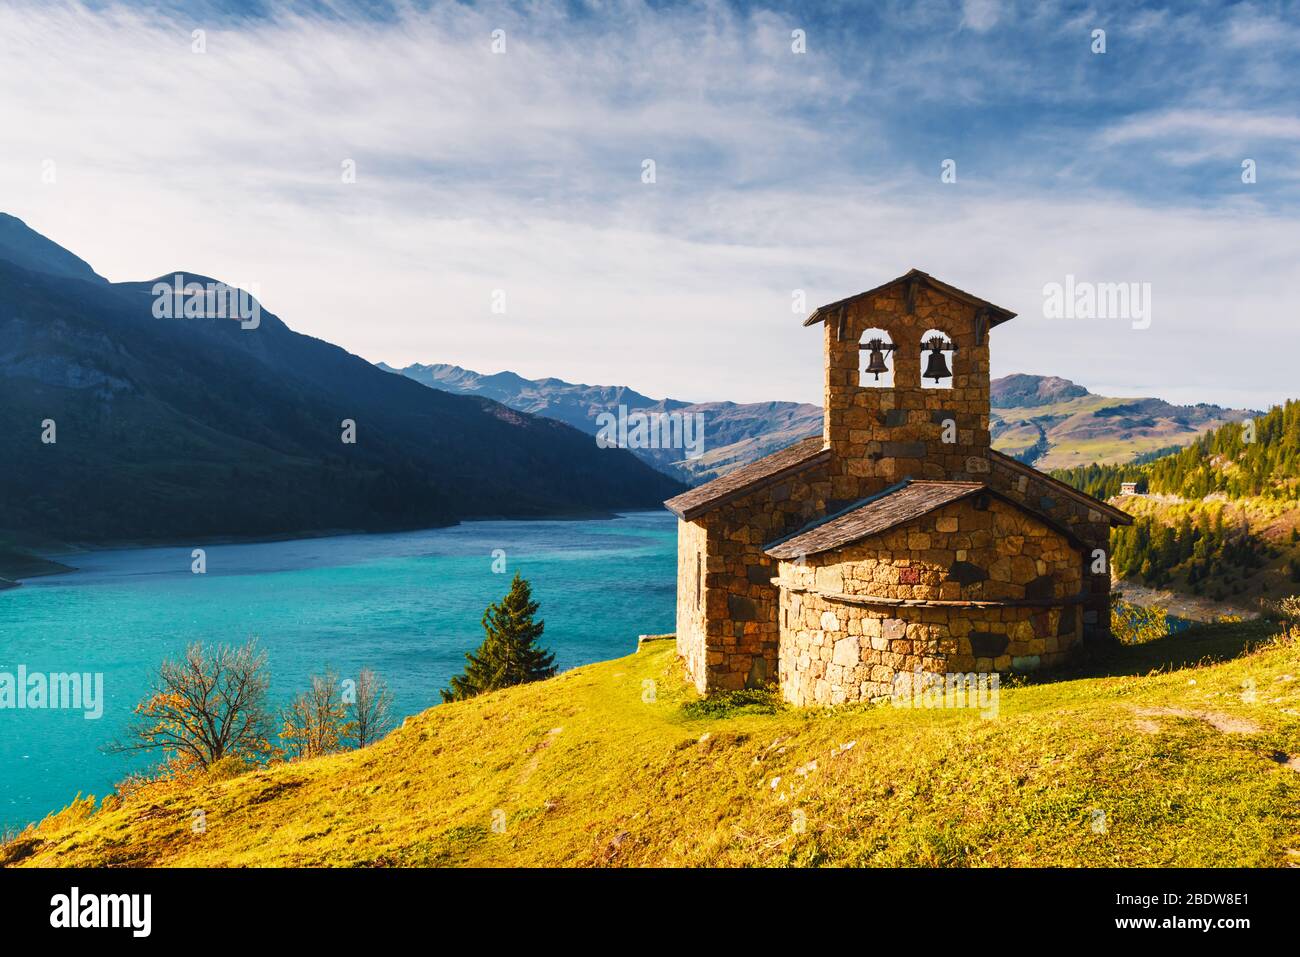 Sunny vista pittoresca della cappella di pietra sul lago di Roselend (Lac de Roselend) in Francia Alpi (Auvergne-Rhone-Alpes). Fotografia di paesaggi Foto Stock